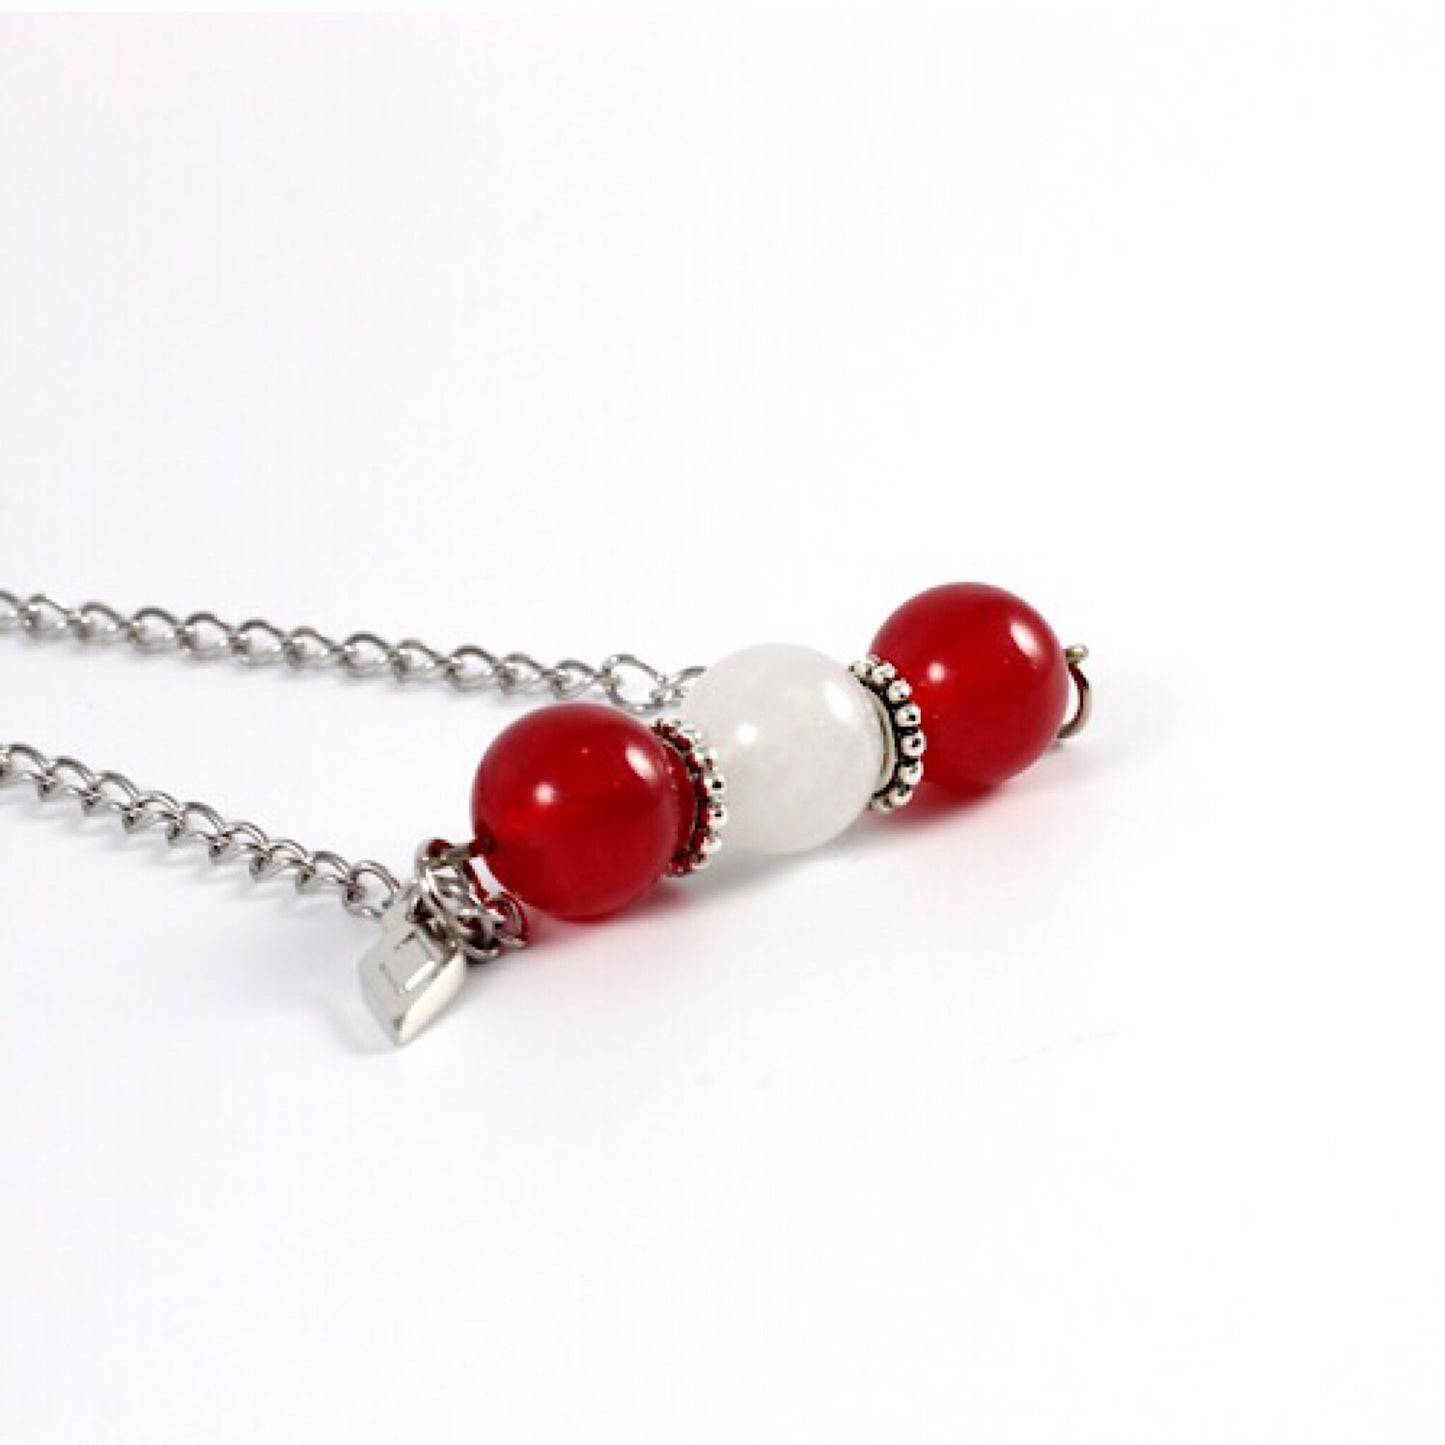 
                  
                    Joli collier composé de pierres fines jade rouge et jadeDétail du collier Mia avec des pierres de jade blanc et rouge, sur une chaîne en acier inoxydable.
                  
                